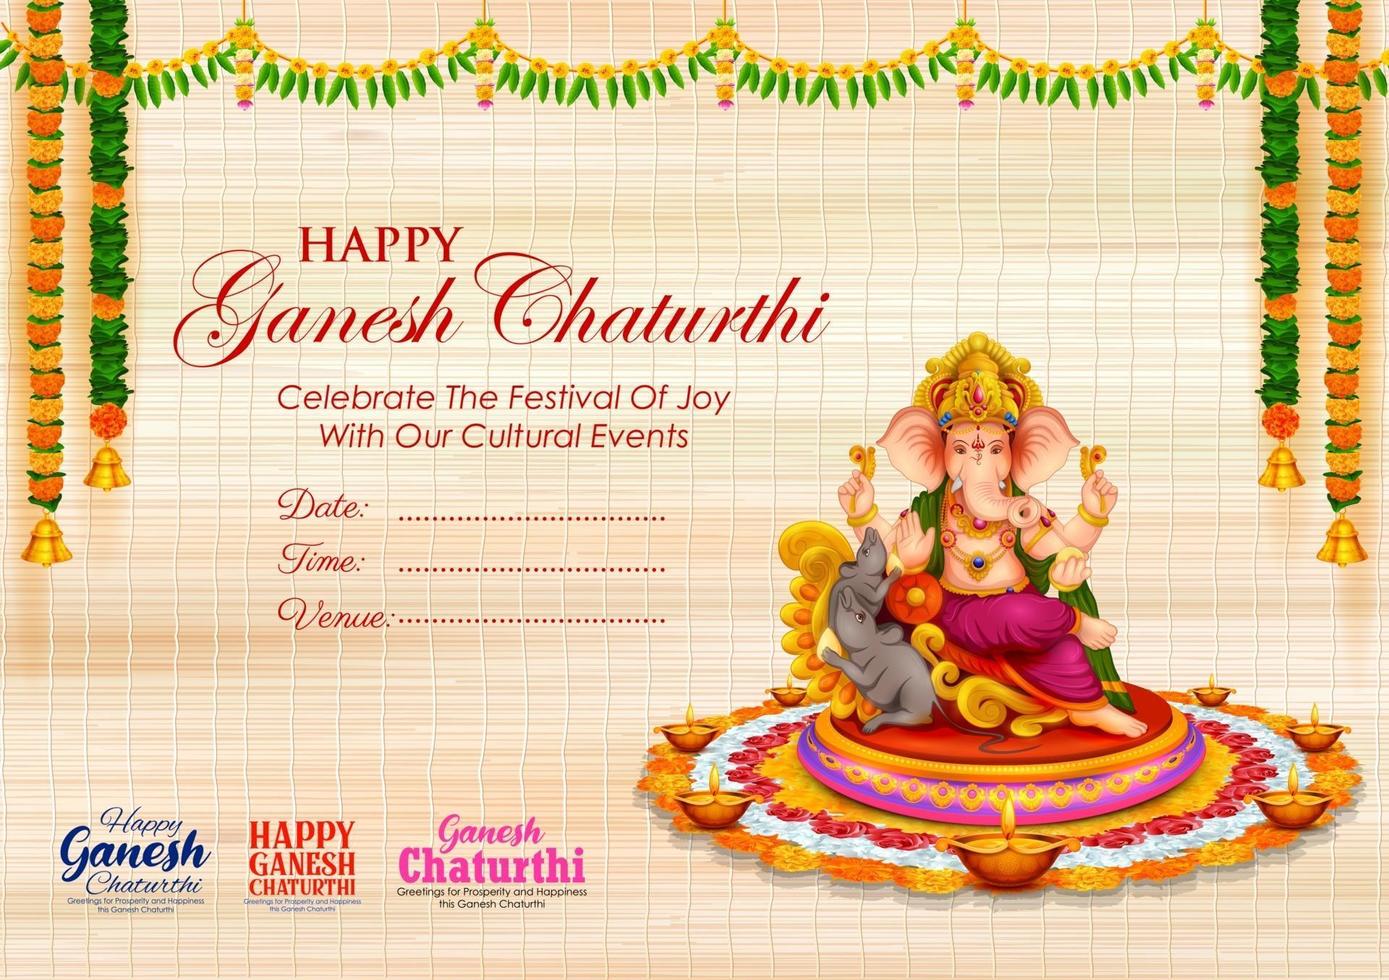 fondo de lord ganpati para el festival de ganesh chaturthi de la india vector